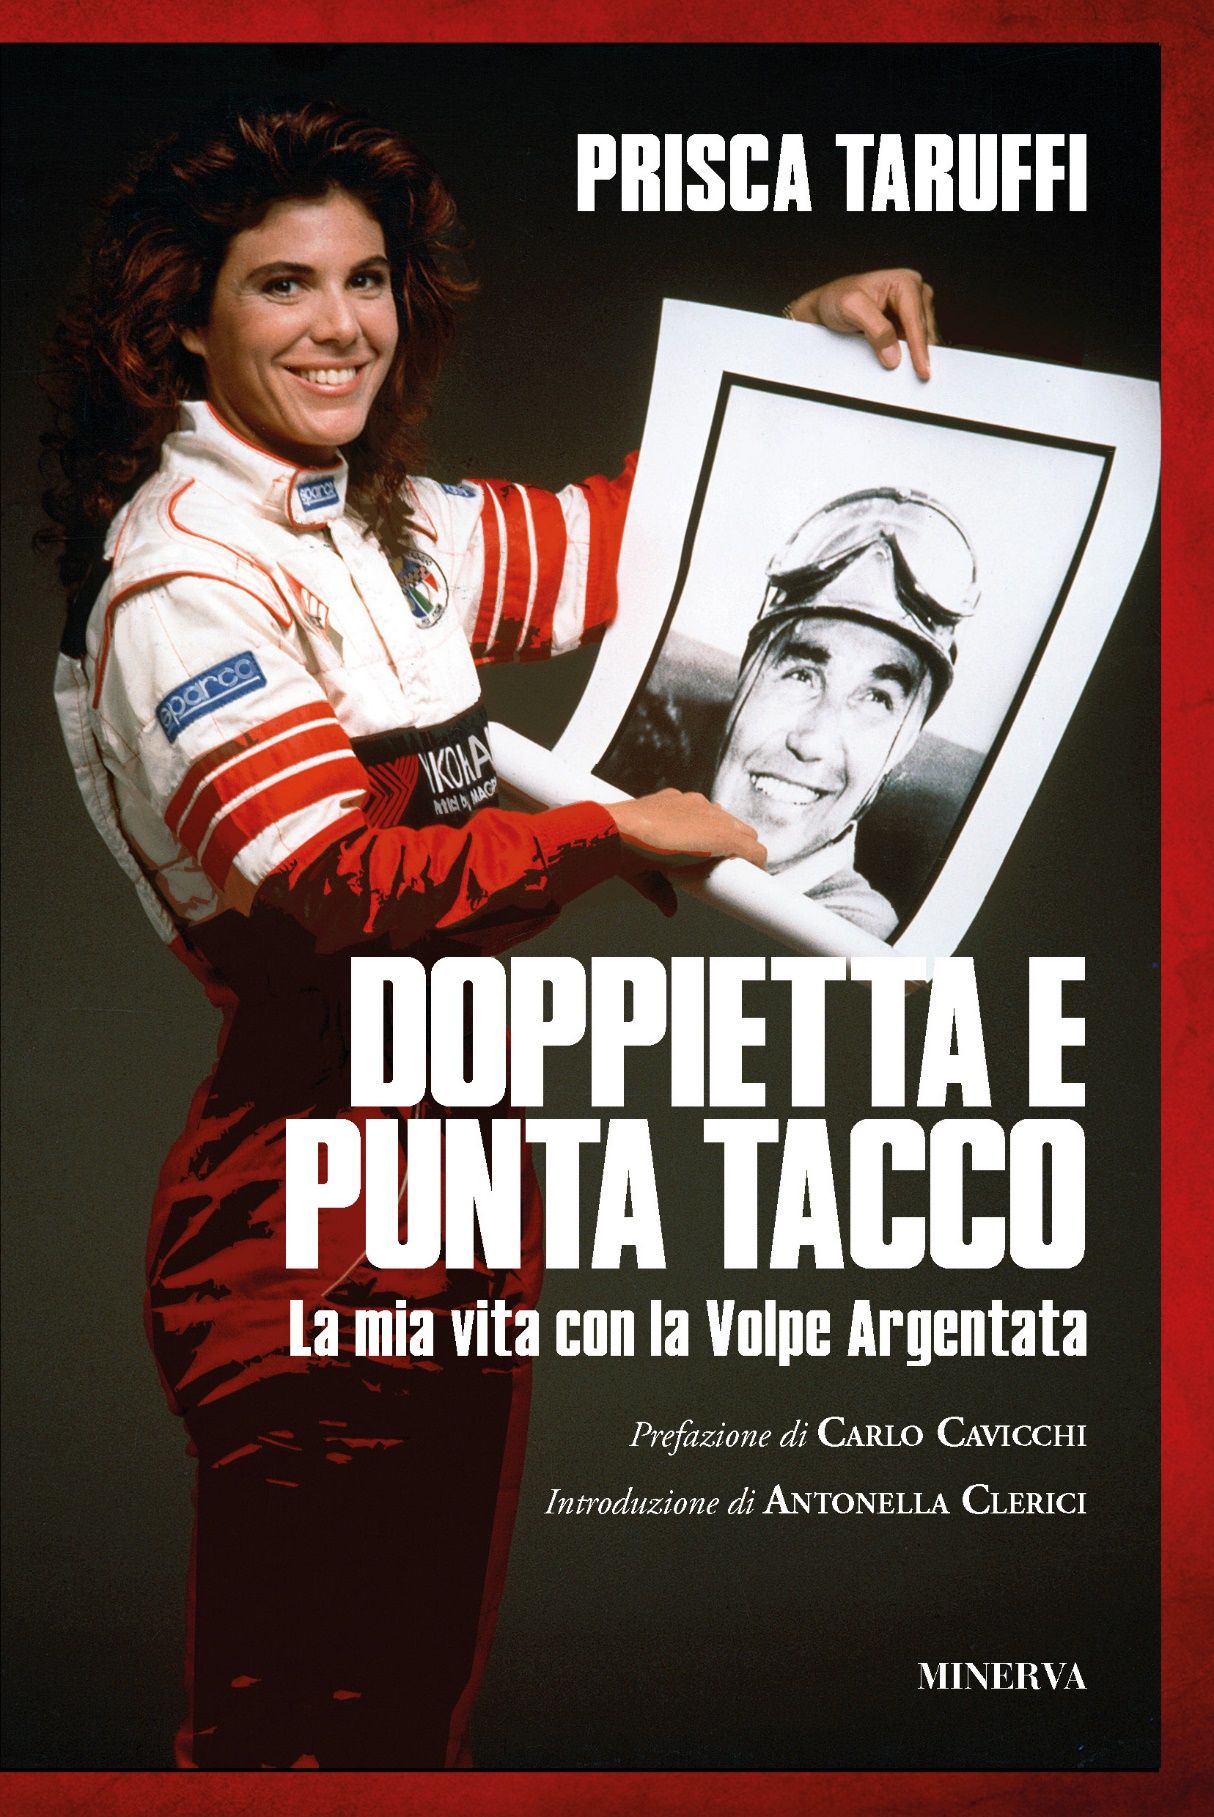 Un libro di Prisca Taruffi, figlia di Piero Taruffi: DOPPIETTA E PUNTA TACCO. La mia vita con la Volpe Argentata (EDIZIONI MINERVA)